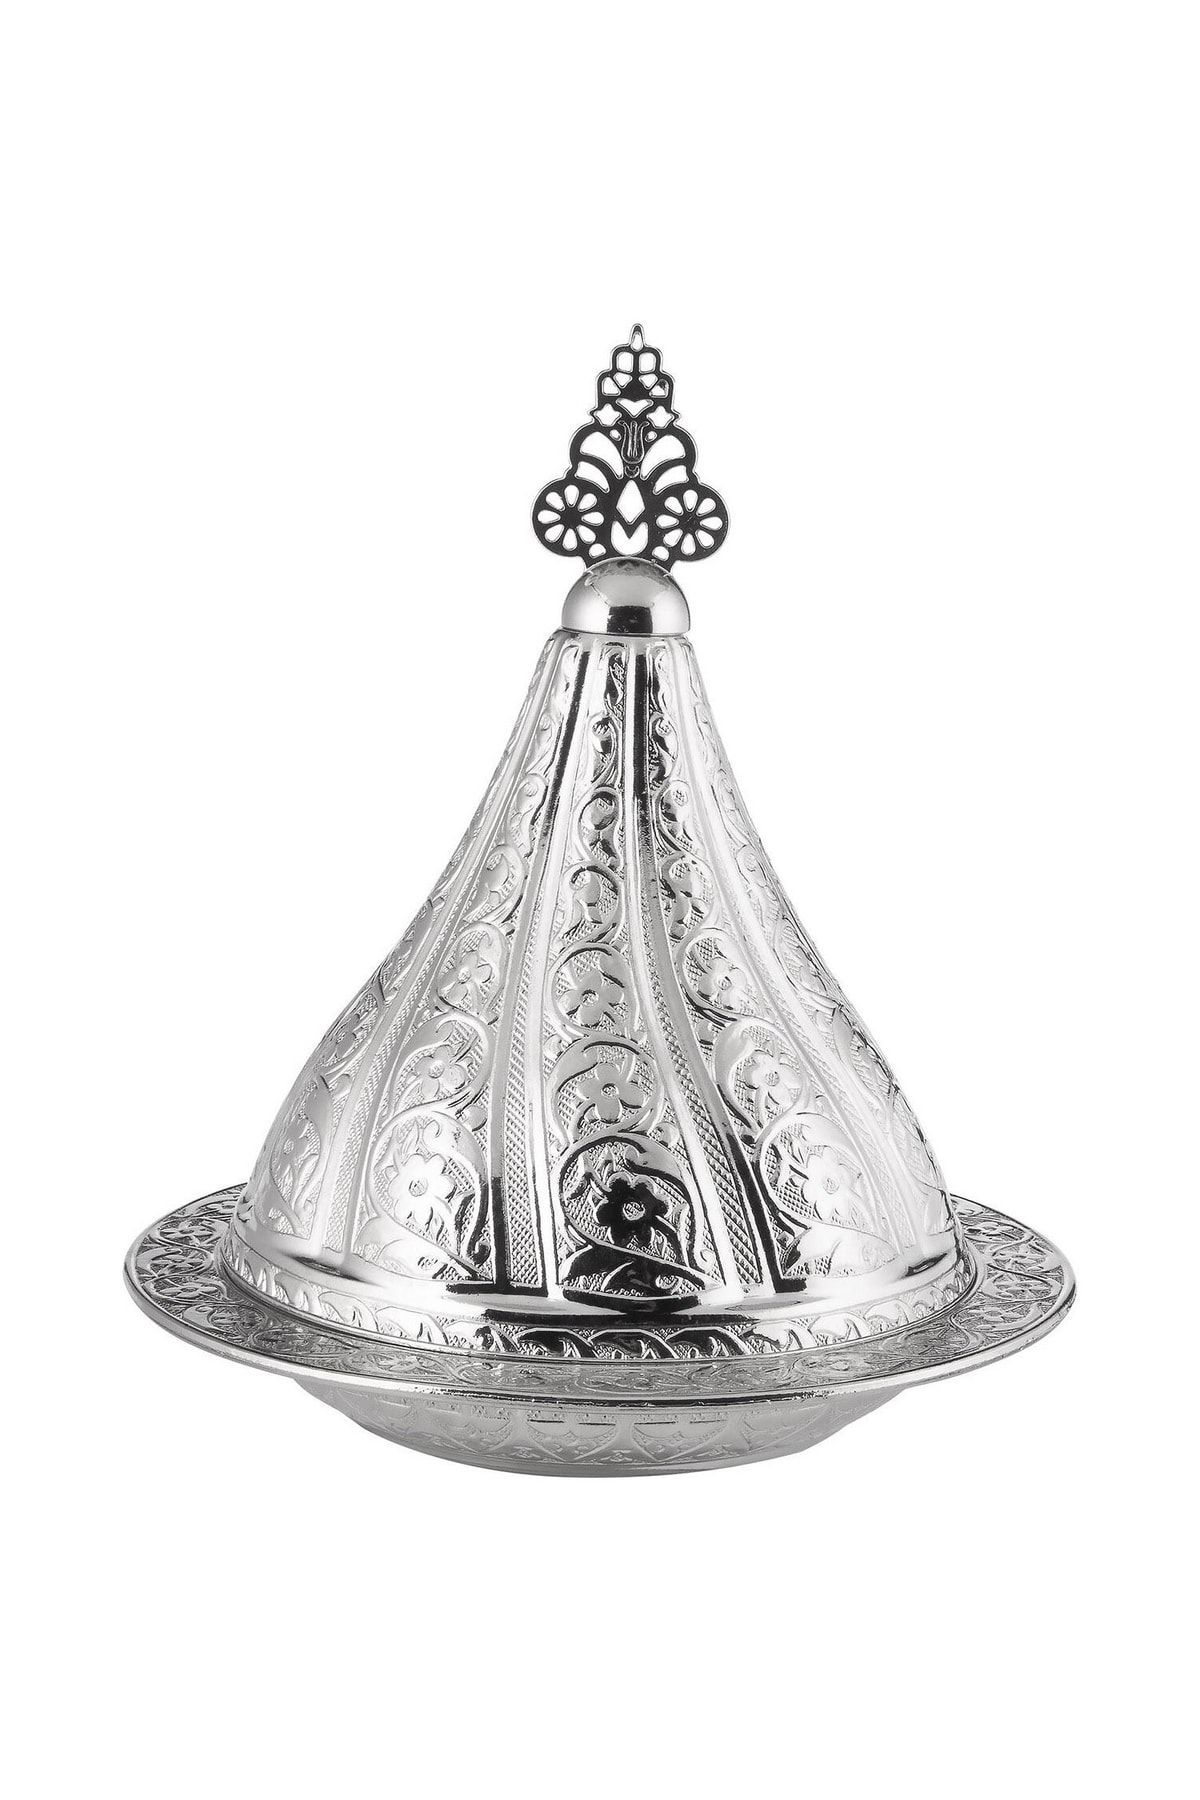 Sena Osmanlı Orta Boy (13cmx15cm) Gümüş Renkli Kapaklı Şekerlik, Lokumluk, Hurmalık